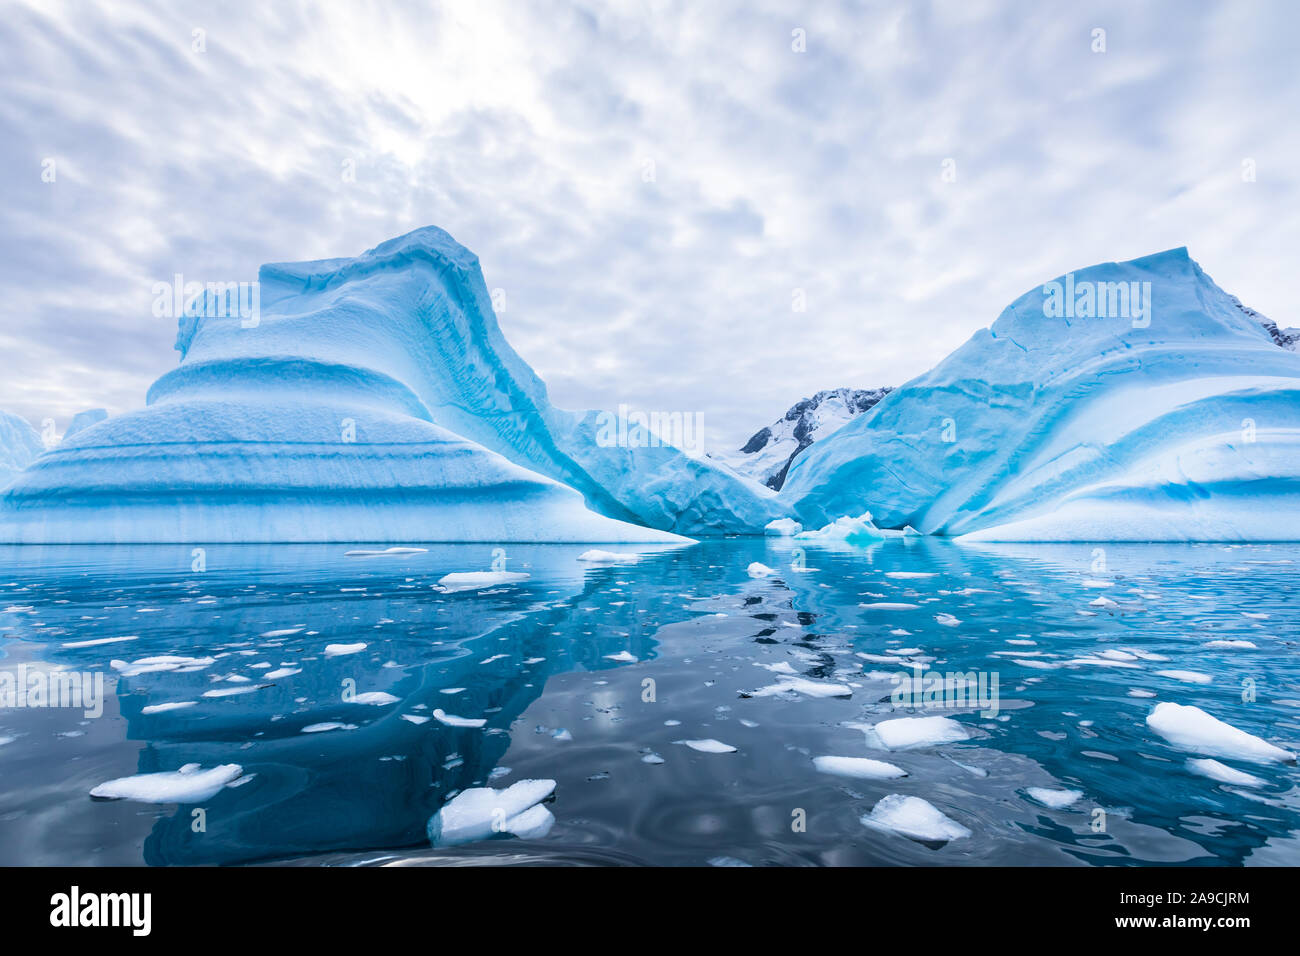 Dans l'Antarctique iceberg flottant dans la mer, paysage gelé avec d'énormes morceaux de glace réfléchissant sur la surface de l'eau, Péninsule Antarctique Banque D'Images